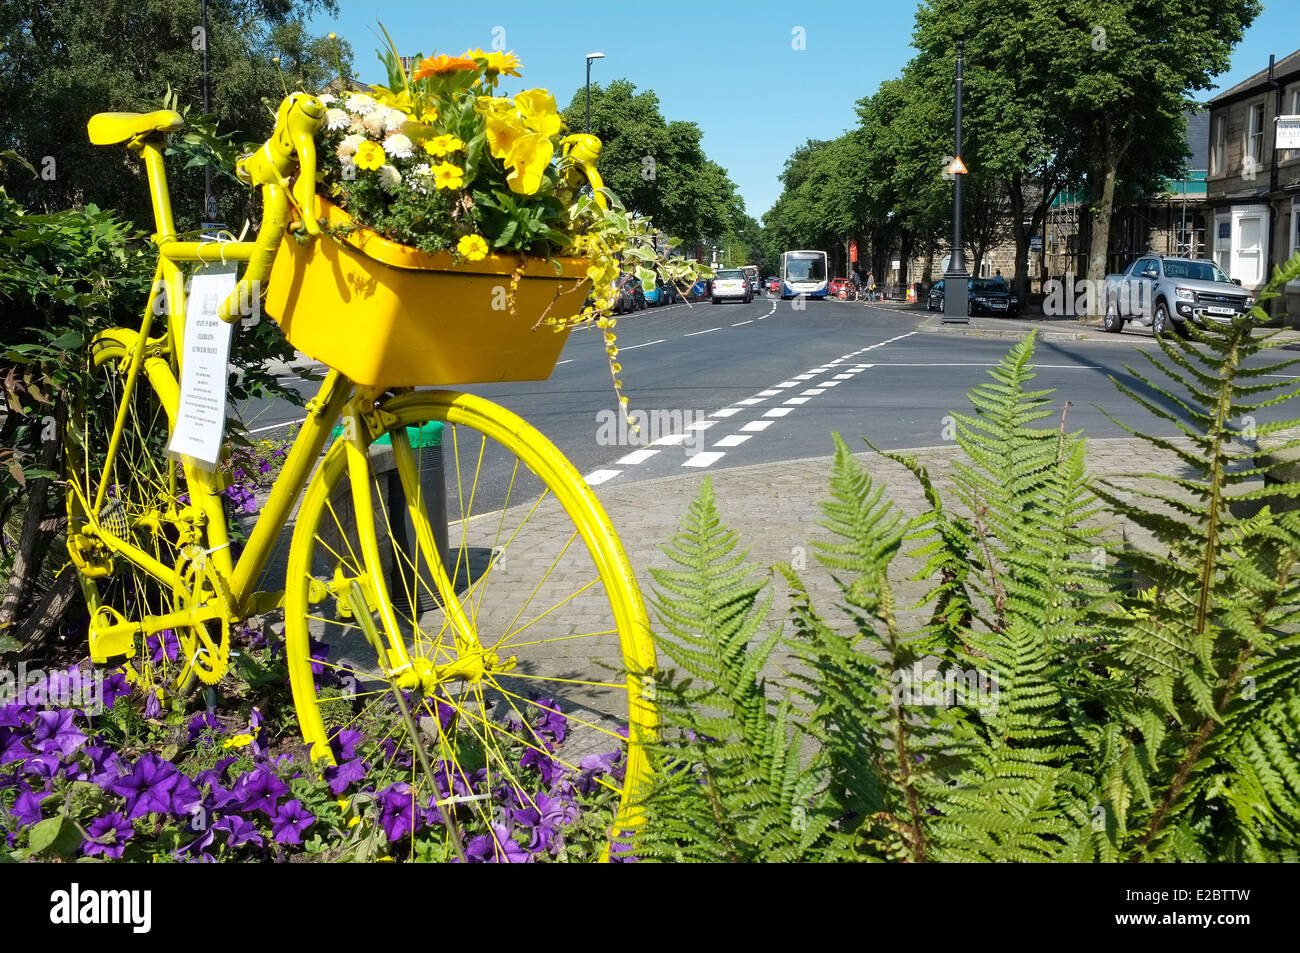 Les préparatifs de la Tour de France 2014, Grande partent en Otley, Leeds, Yorkshire - vélo jaune avec des fleurs dans le panier Banque D'Images